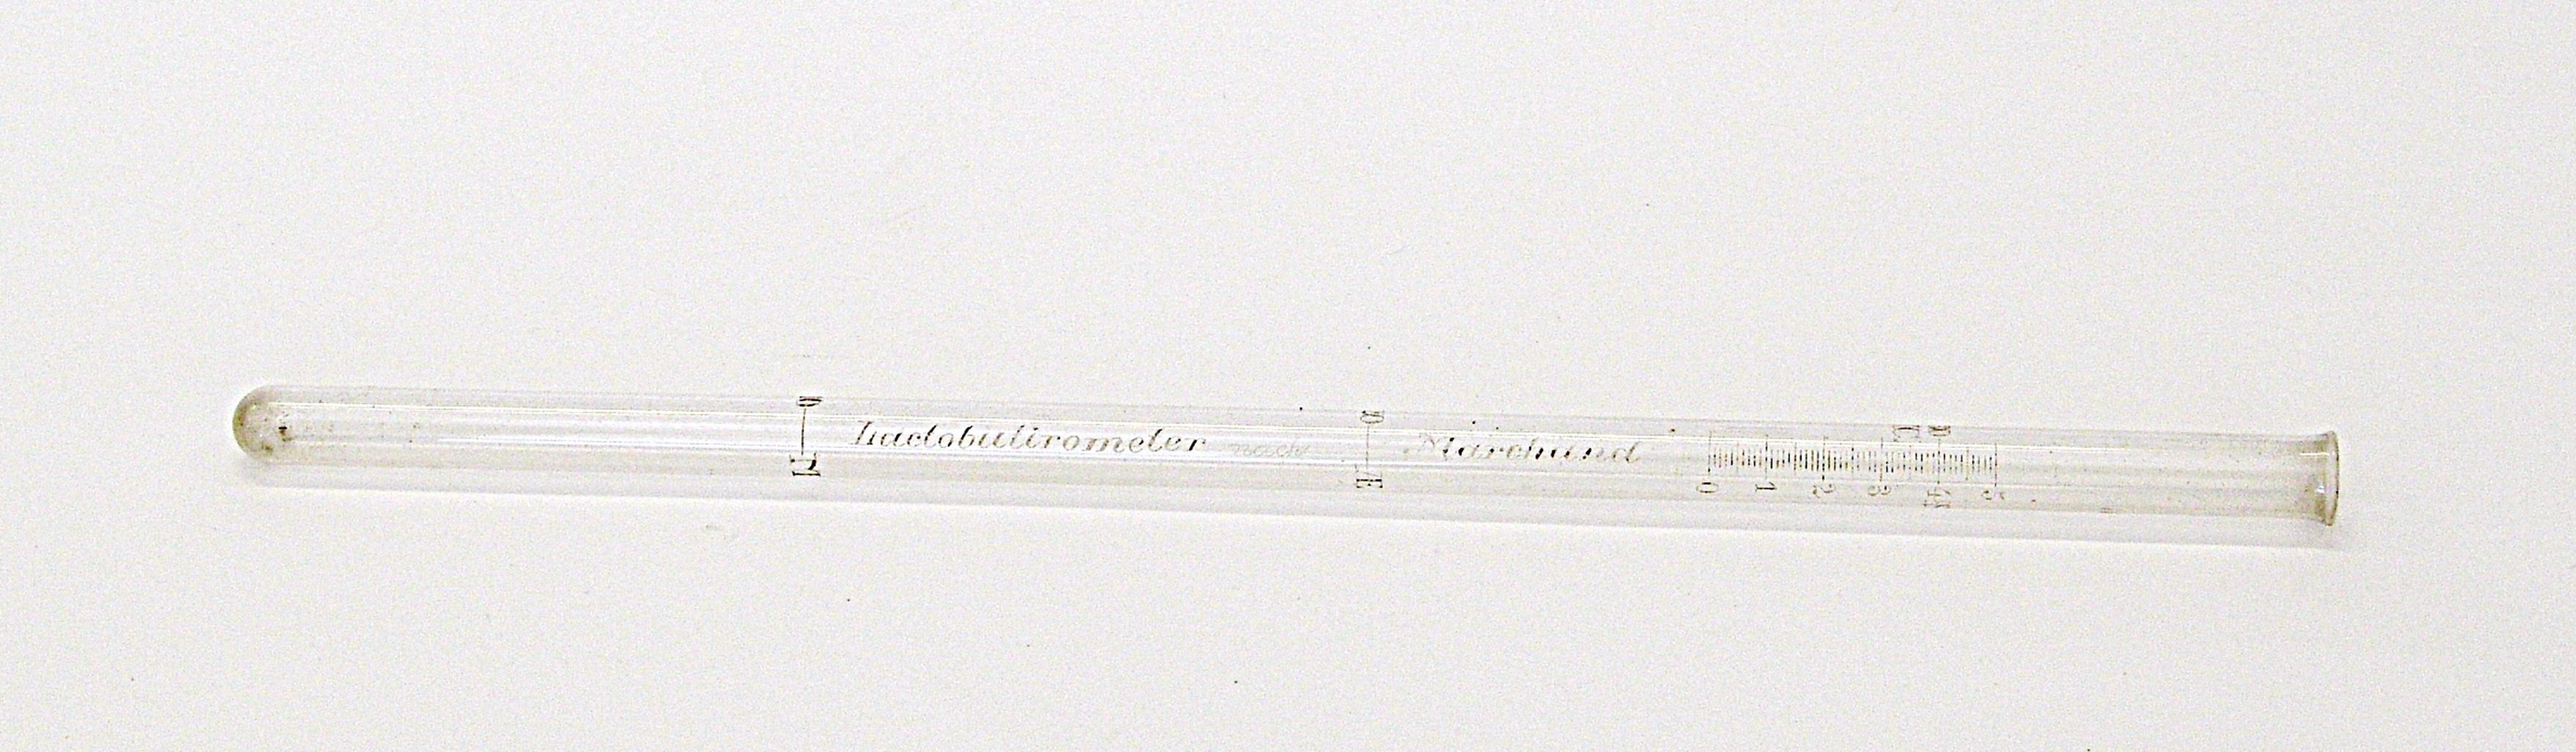 lattobutirrometro, di Marchand - produzione tedesca (fine sec. XX)